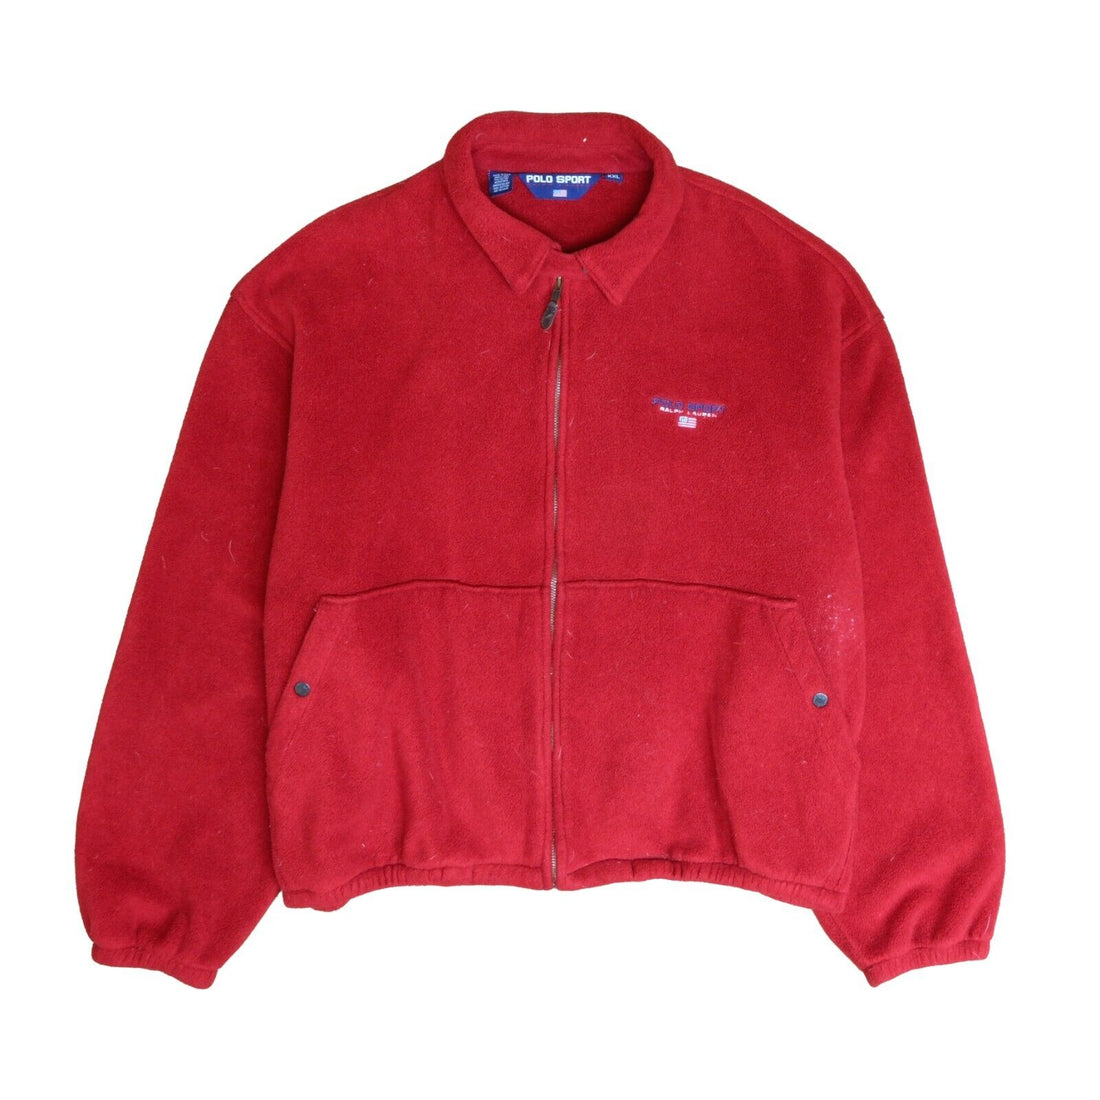 Vintage Polo Sport Ralph Lauren Full Zip Fleece Jacket Size 2XL Red